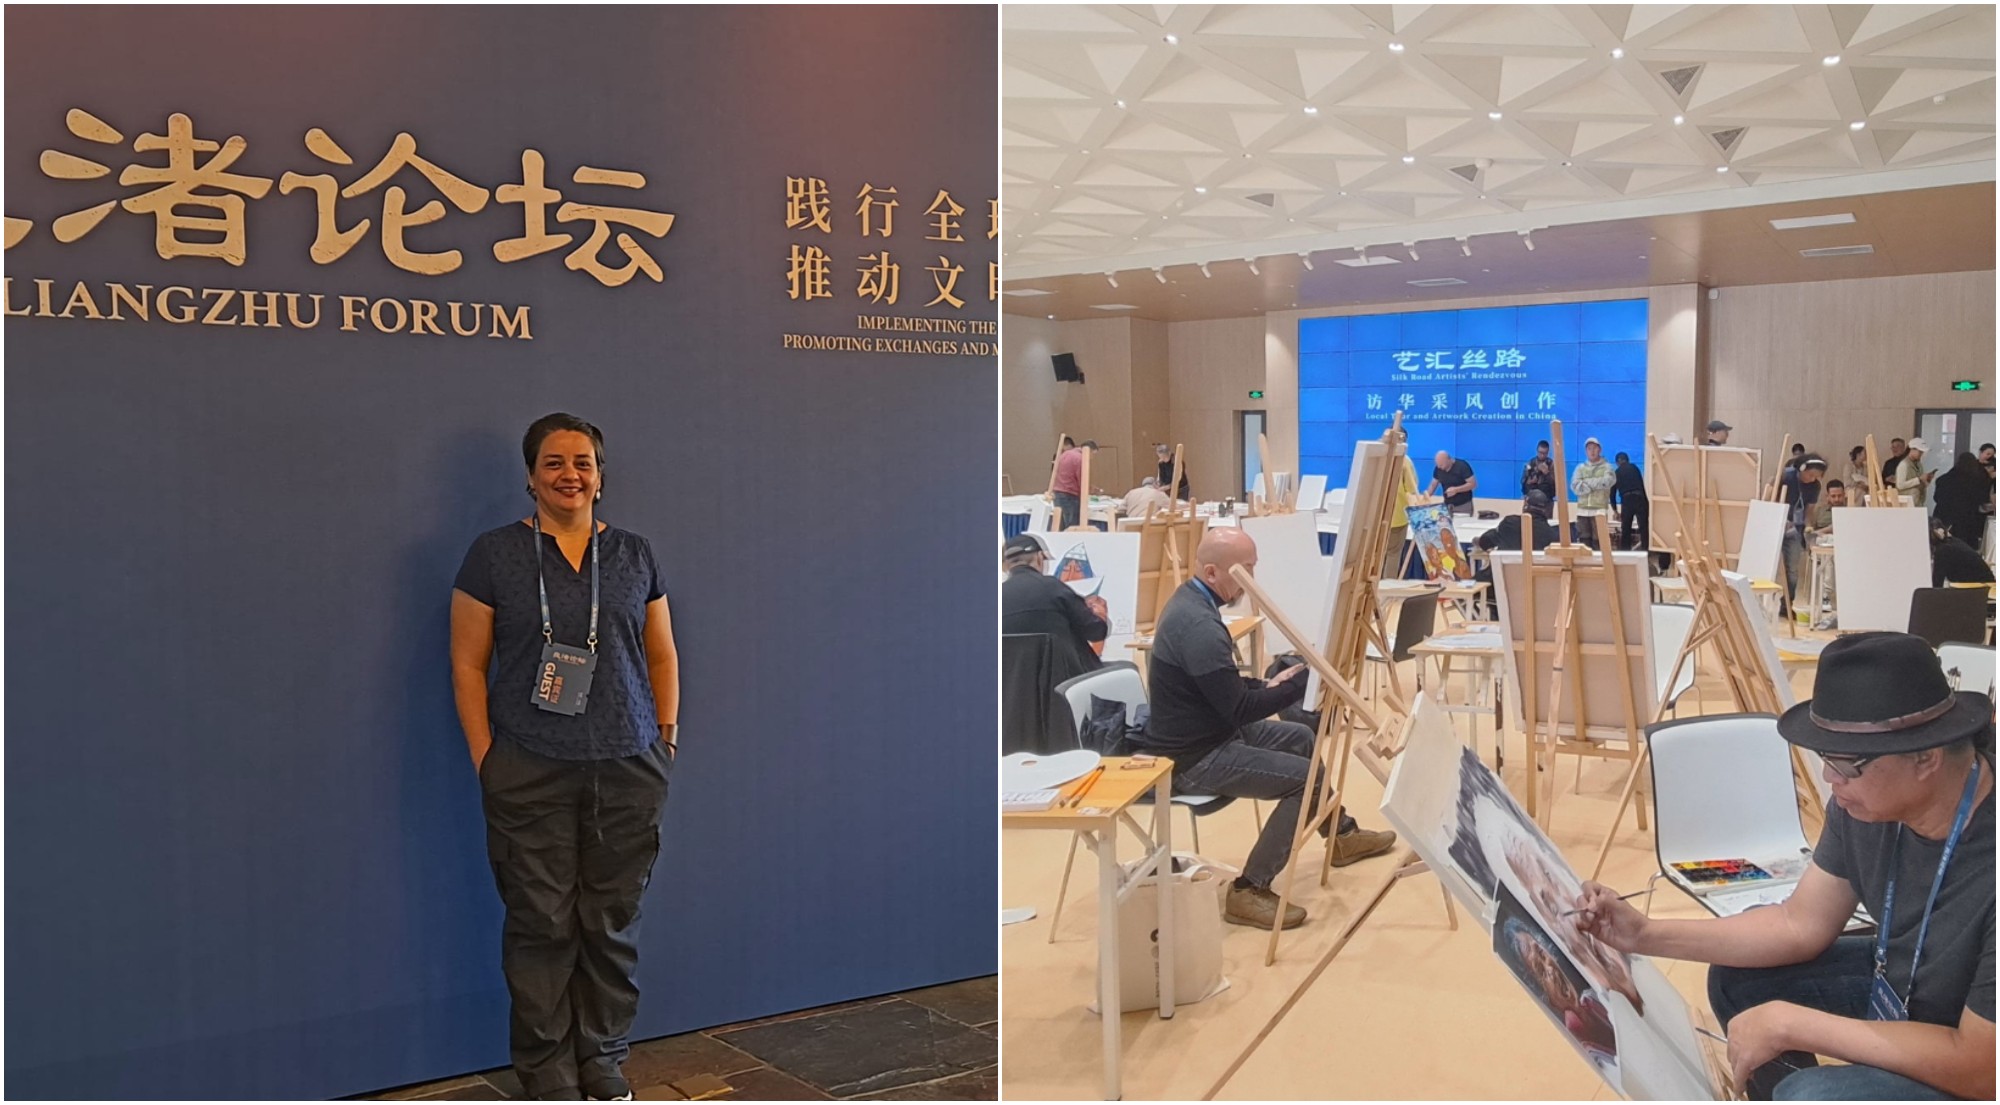 Hondureña participó en evento artístico «Liangzhu Forum» en China